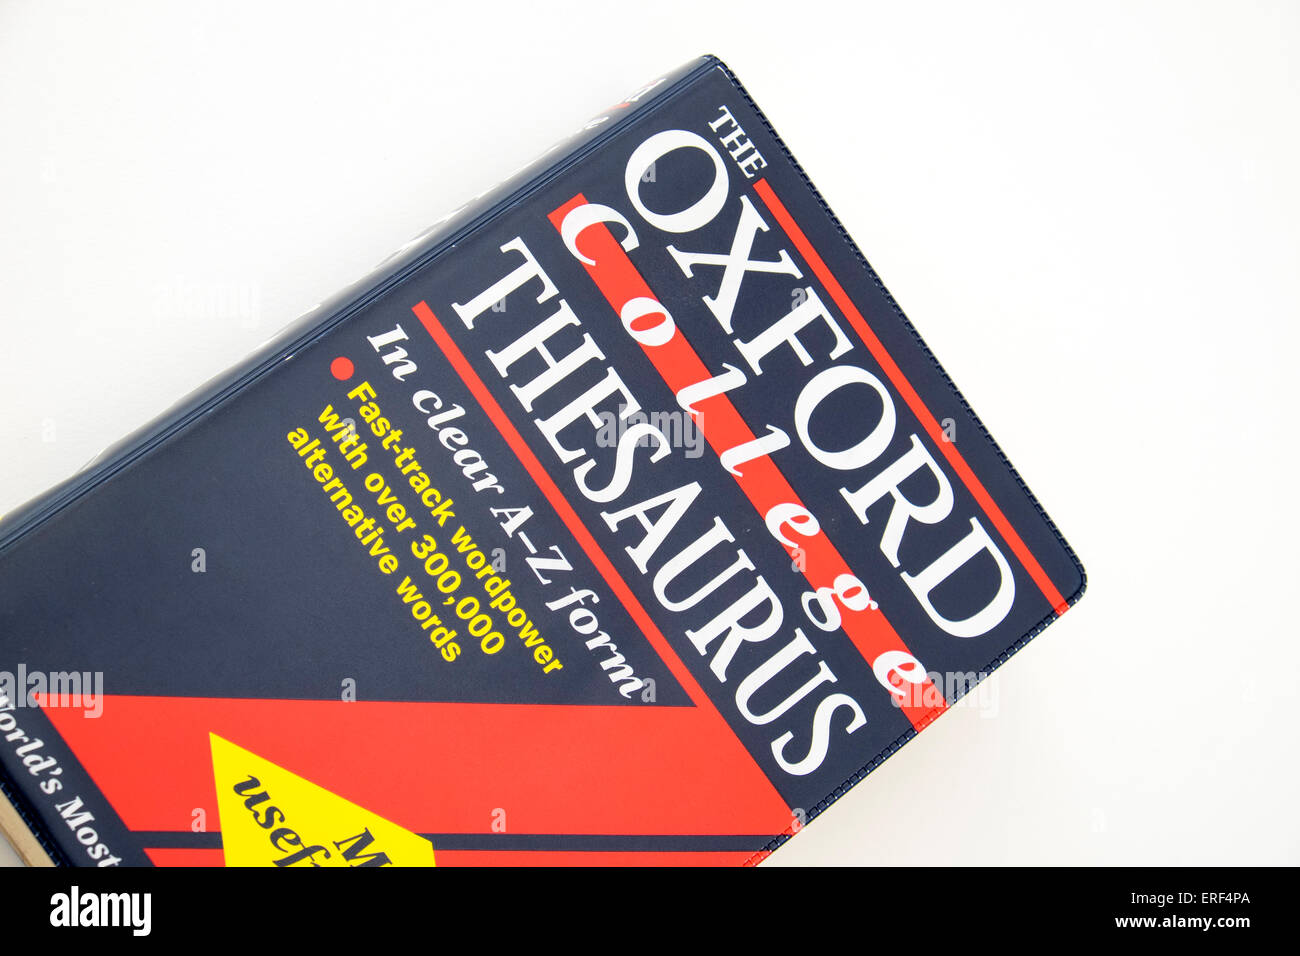 Oxford College Thesaurus Wörterbuch für die Suche nach alternativen Wörtern Stockfoto